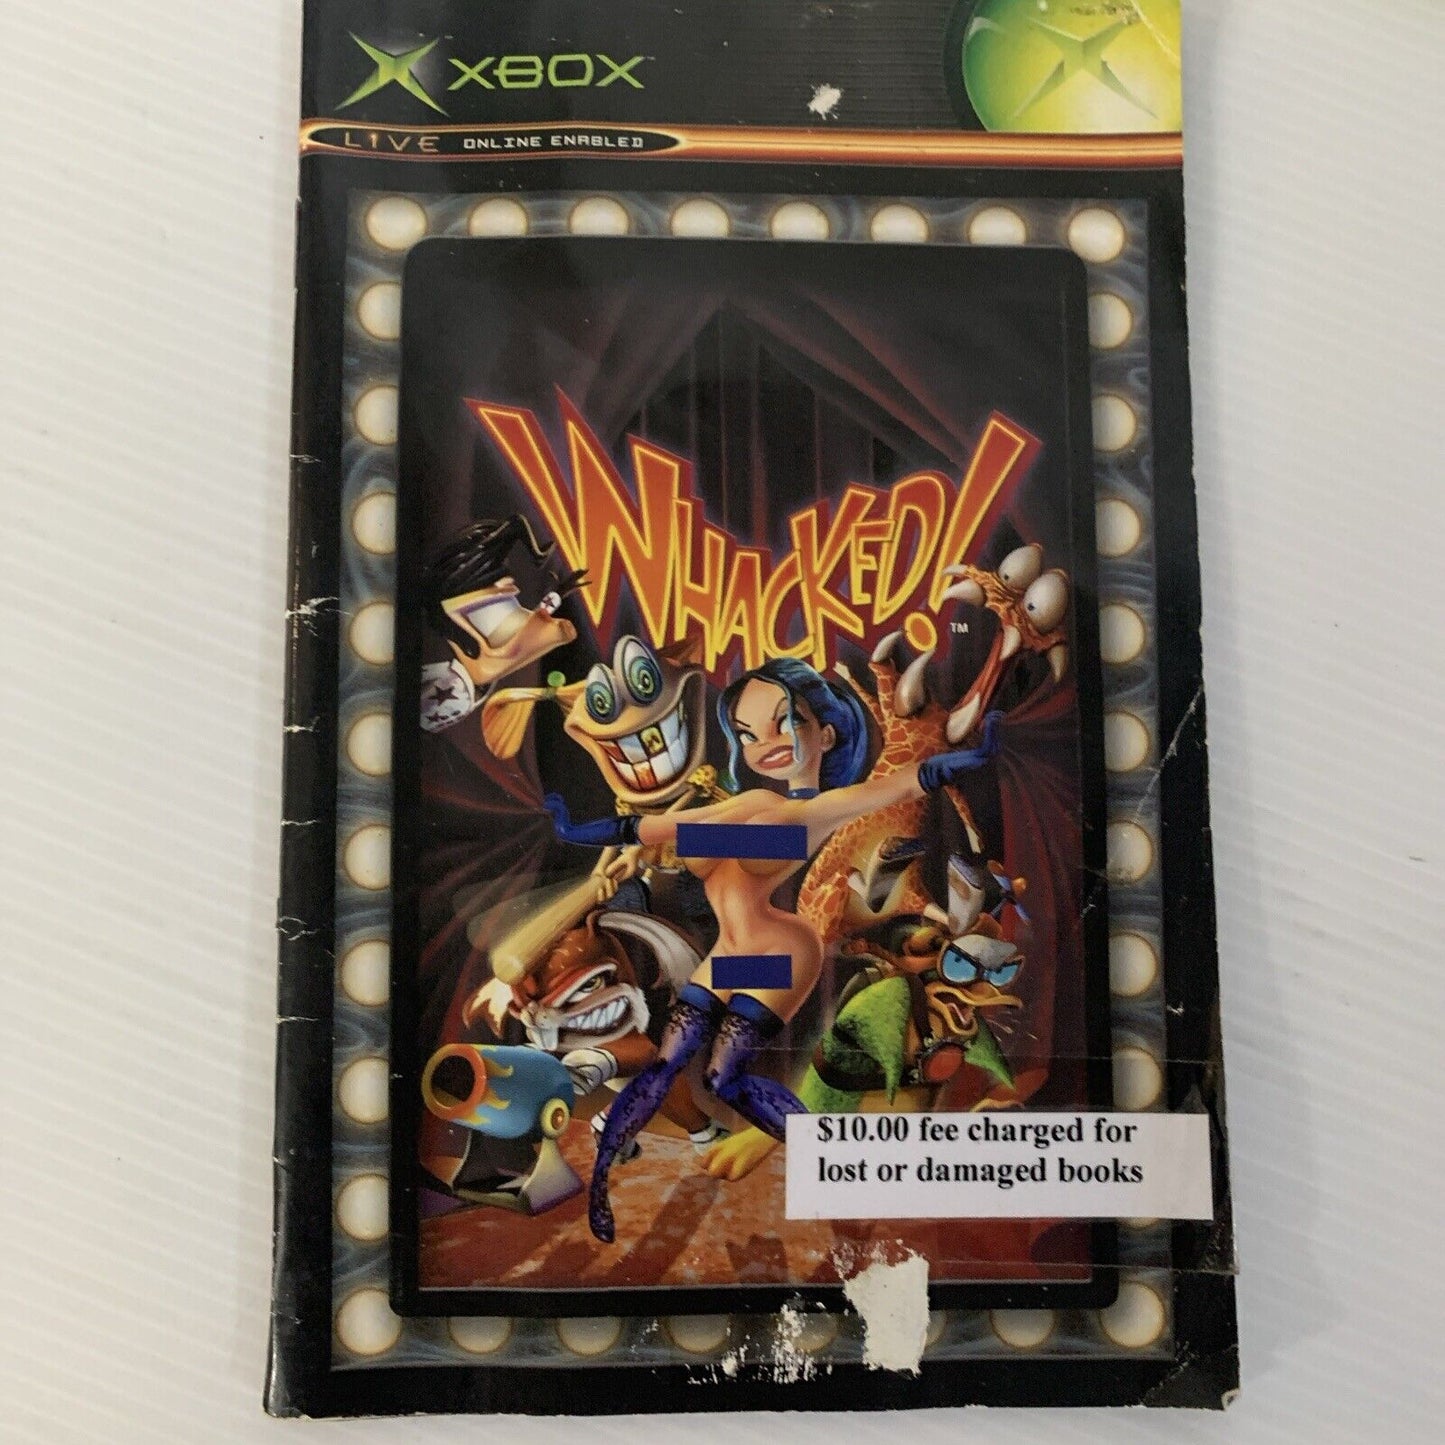 Whacked! Xbox Original Game